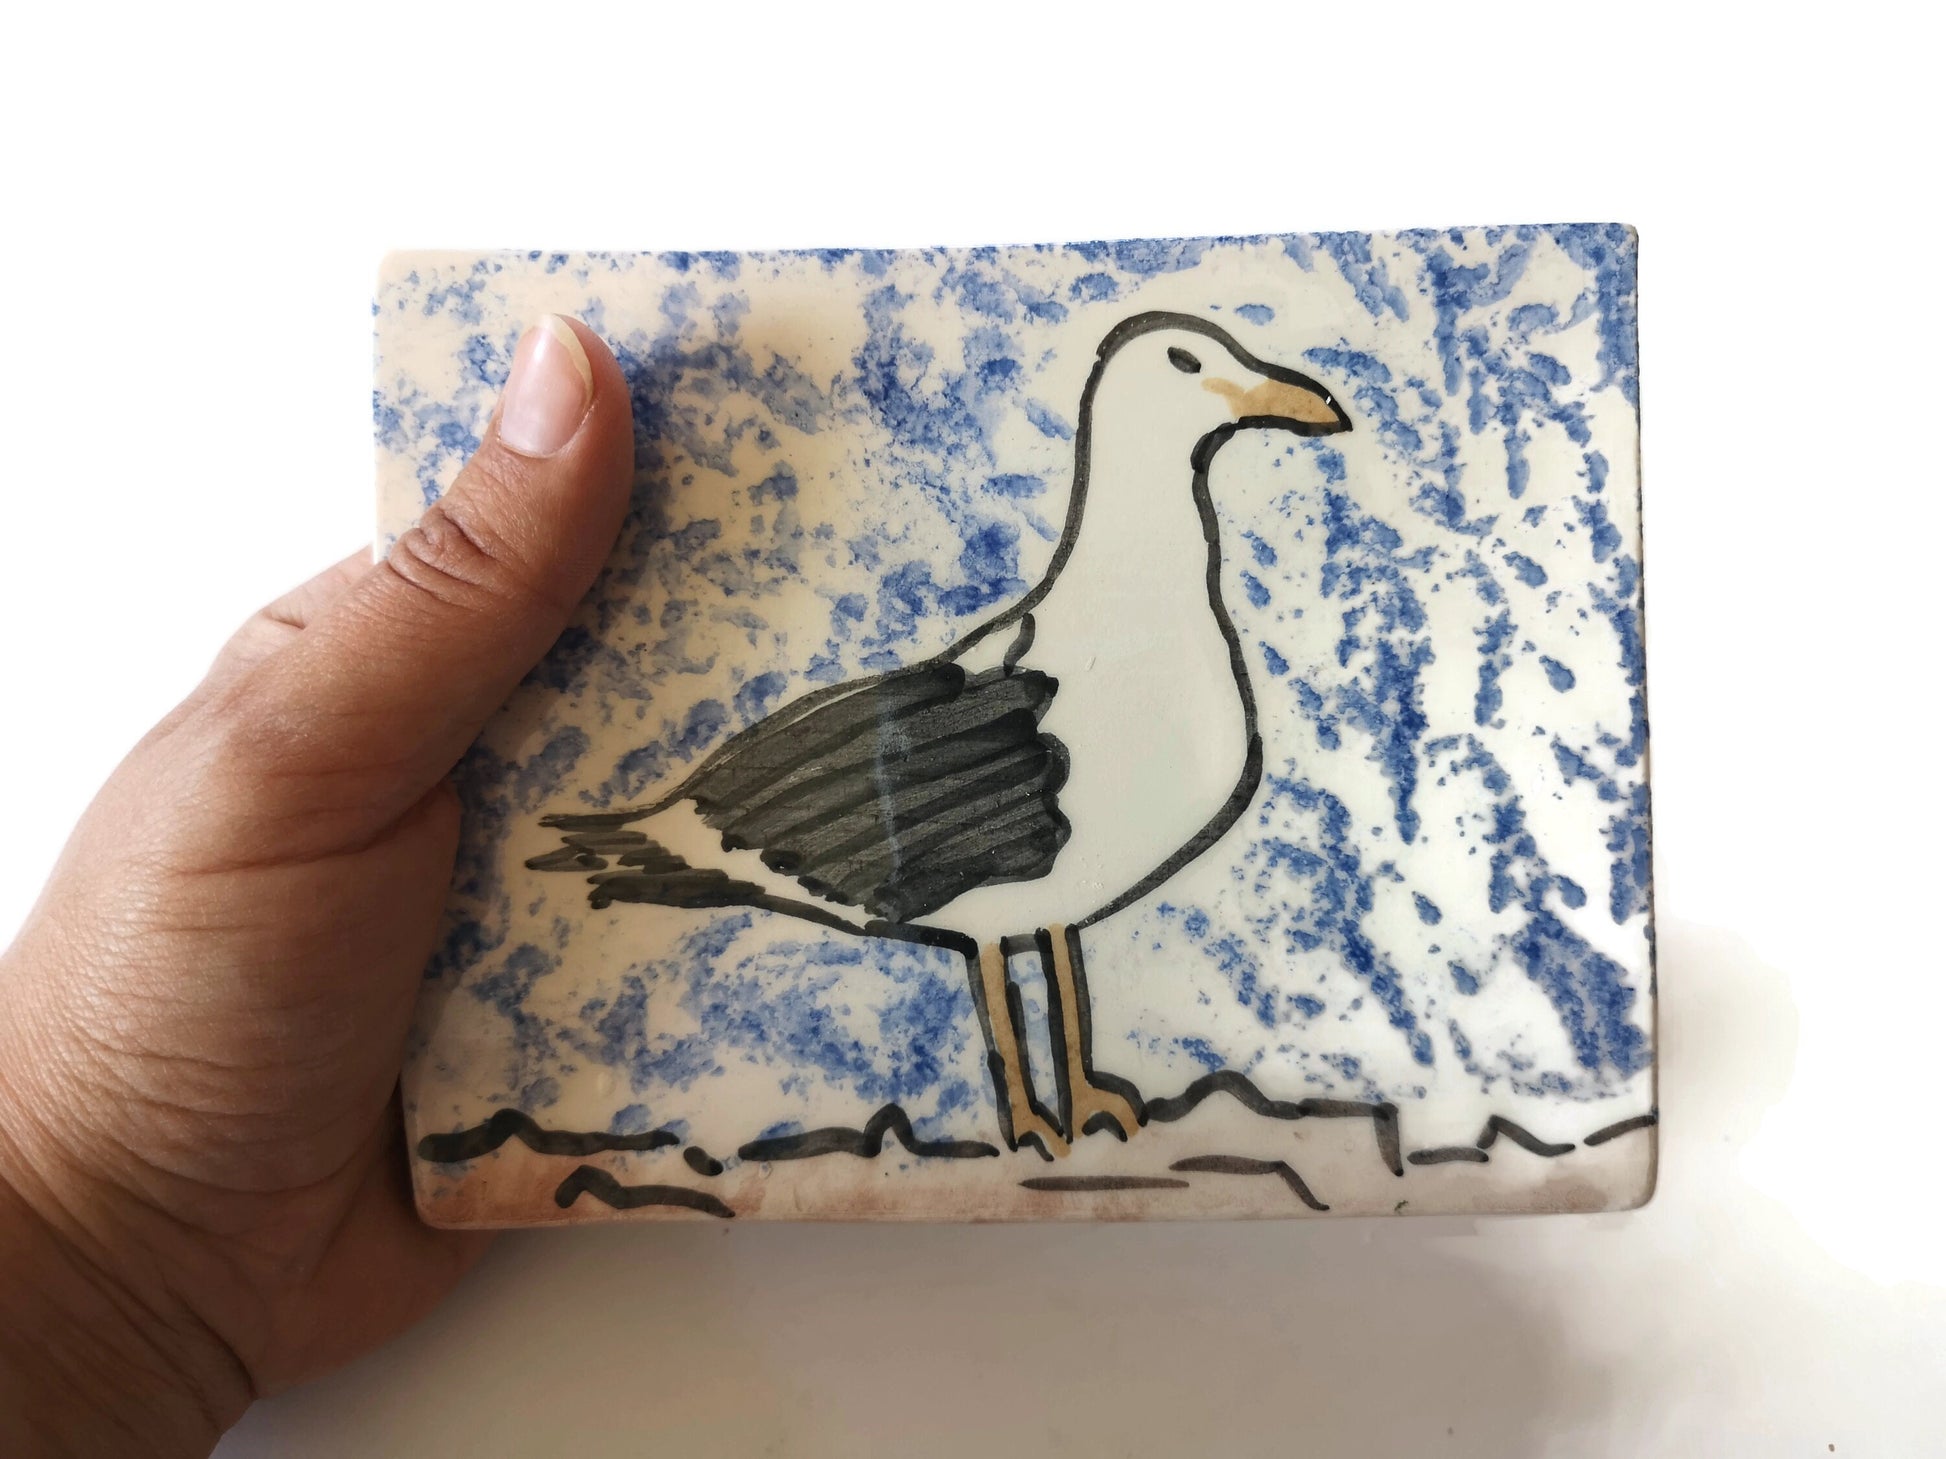 handmade ceramic bird tile, seagull wall decor, handpainted tiles for backsplash, bird lover gifts for men, Best Gifts For Him - Ceramica Ana Rafael